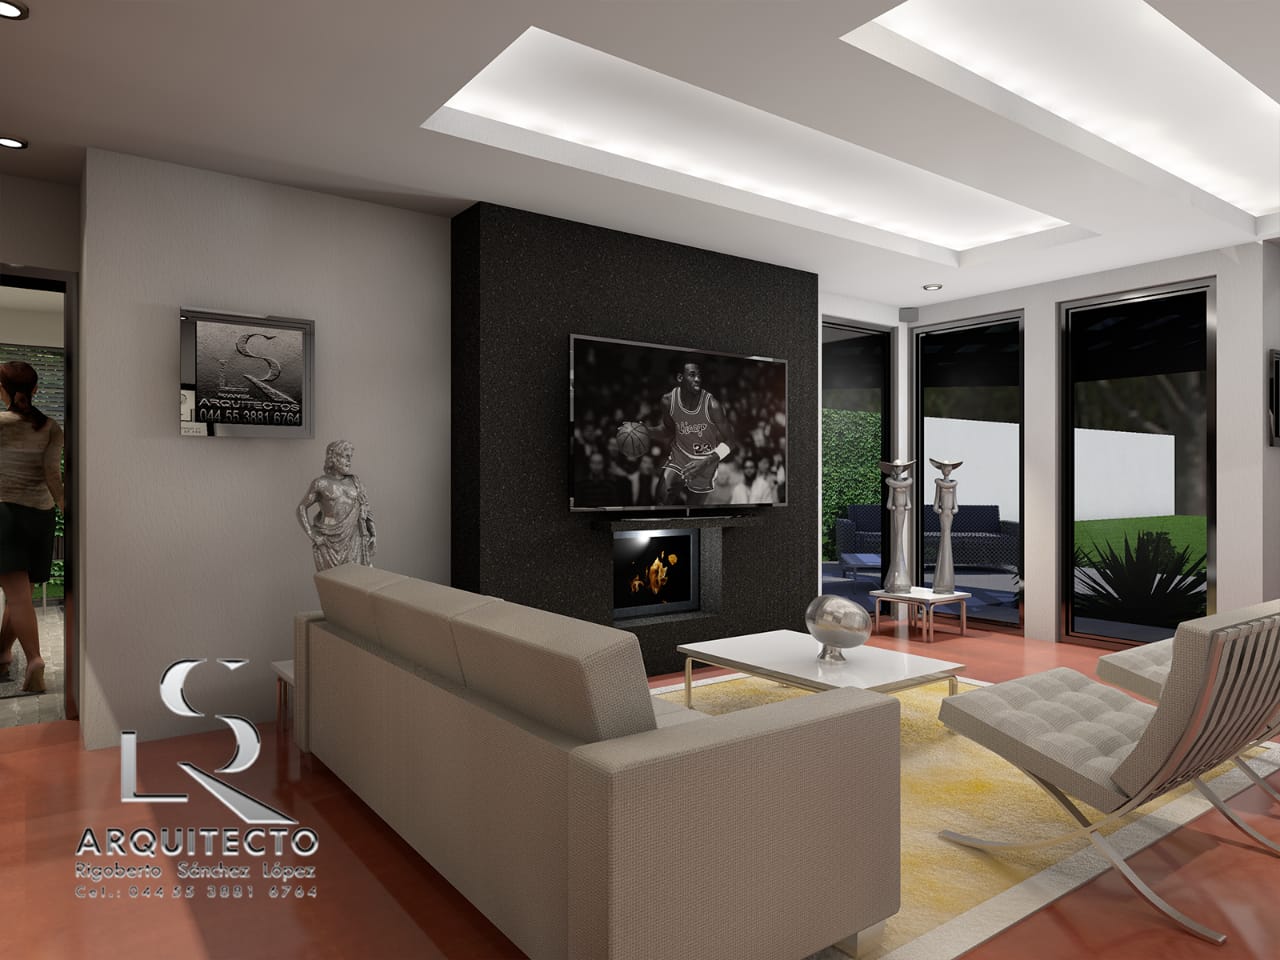 Proyecto vitual 3D con imágenes-renders de su casa habitación